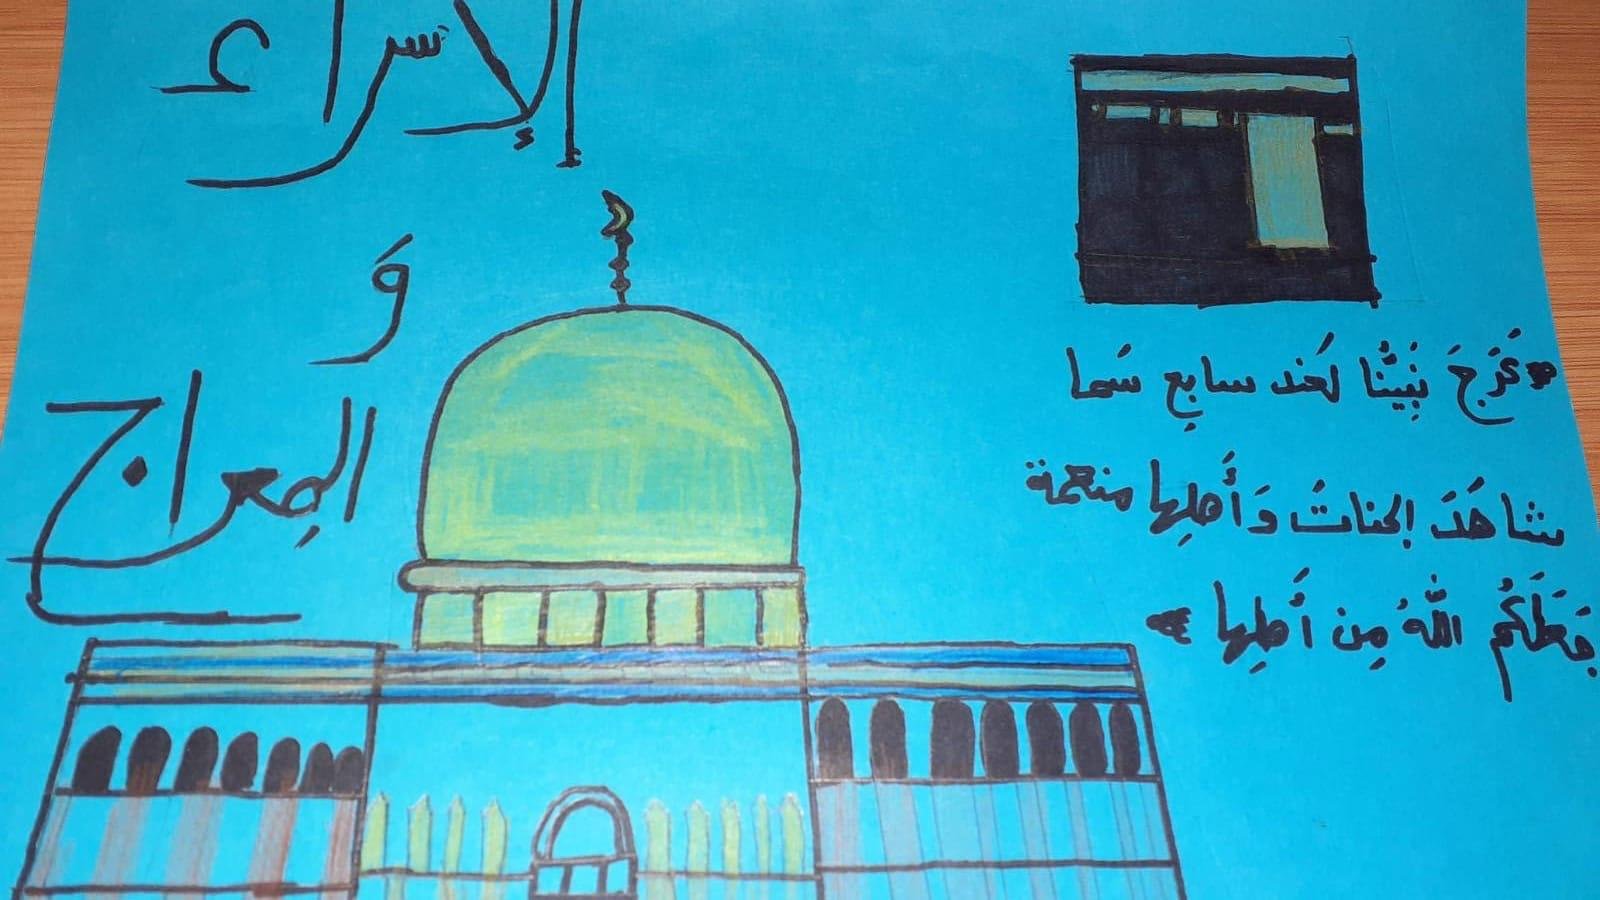 ذكرى الإسراء والمعراج وتكريم الامهات في المدرسة الجماهيرية بير الأمير-الناصرة بحلّة مُثيرةٍ وتواصل جديد "عن بعد"-12